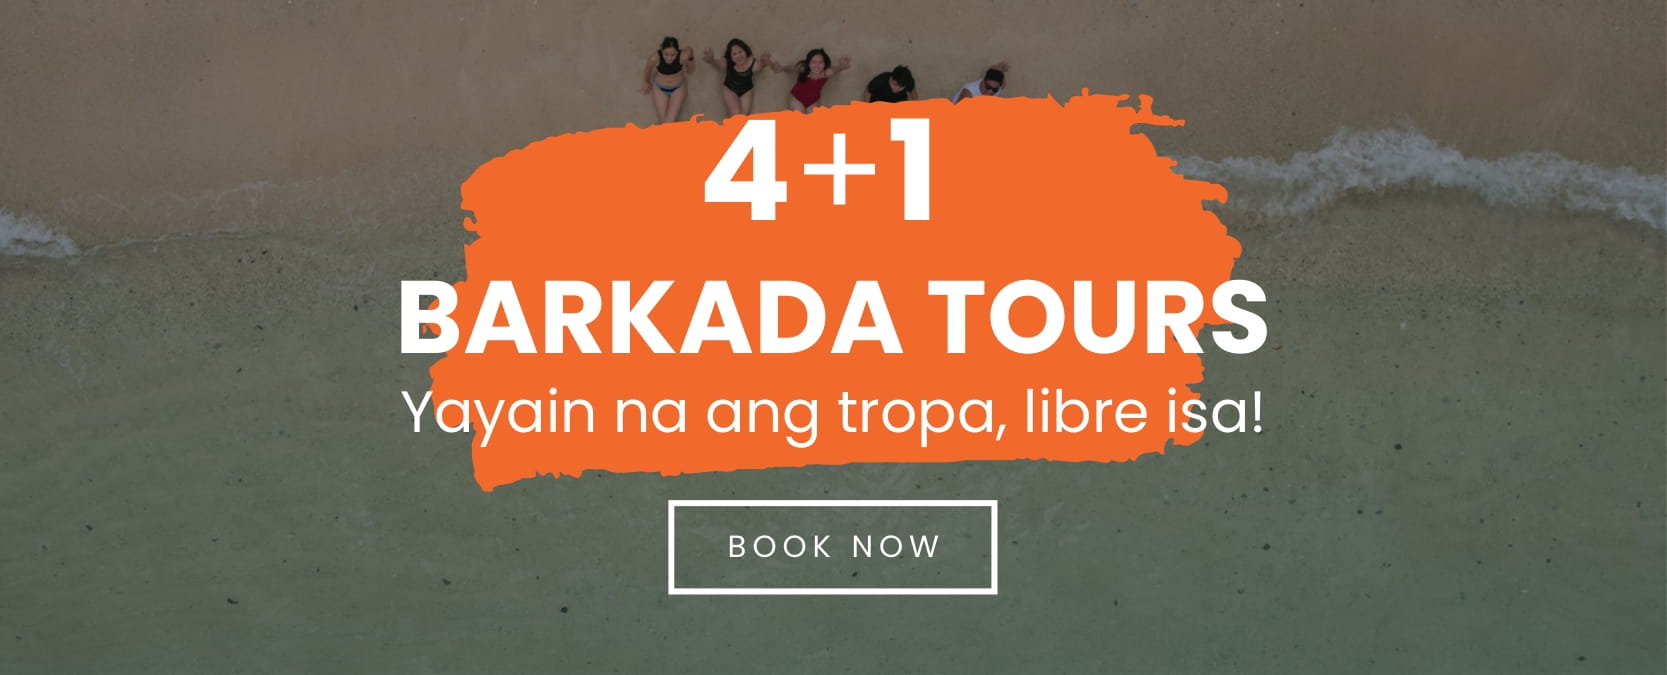 4+1 Barkada Tours Promo